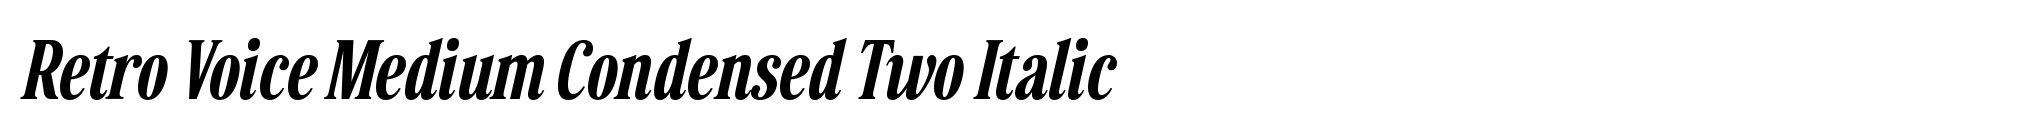 Retro Voice Medium Condensed Two Italic image